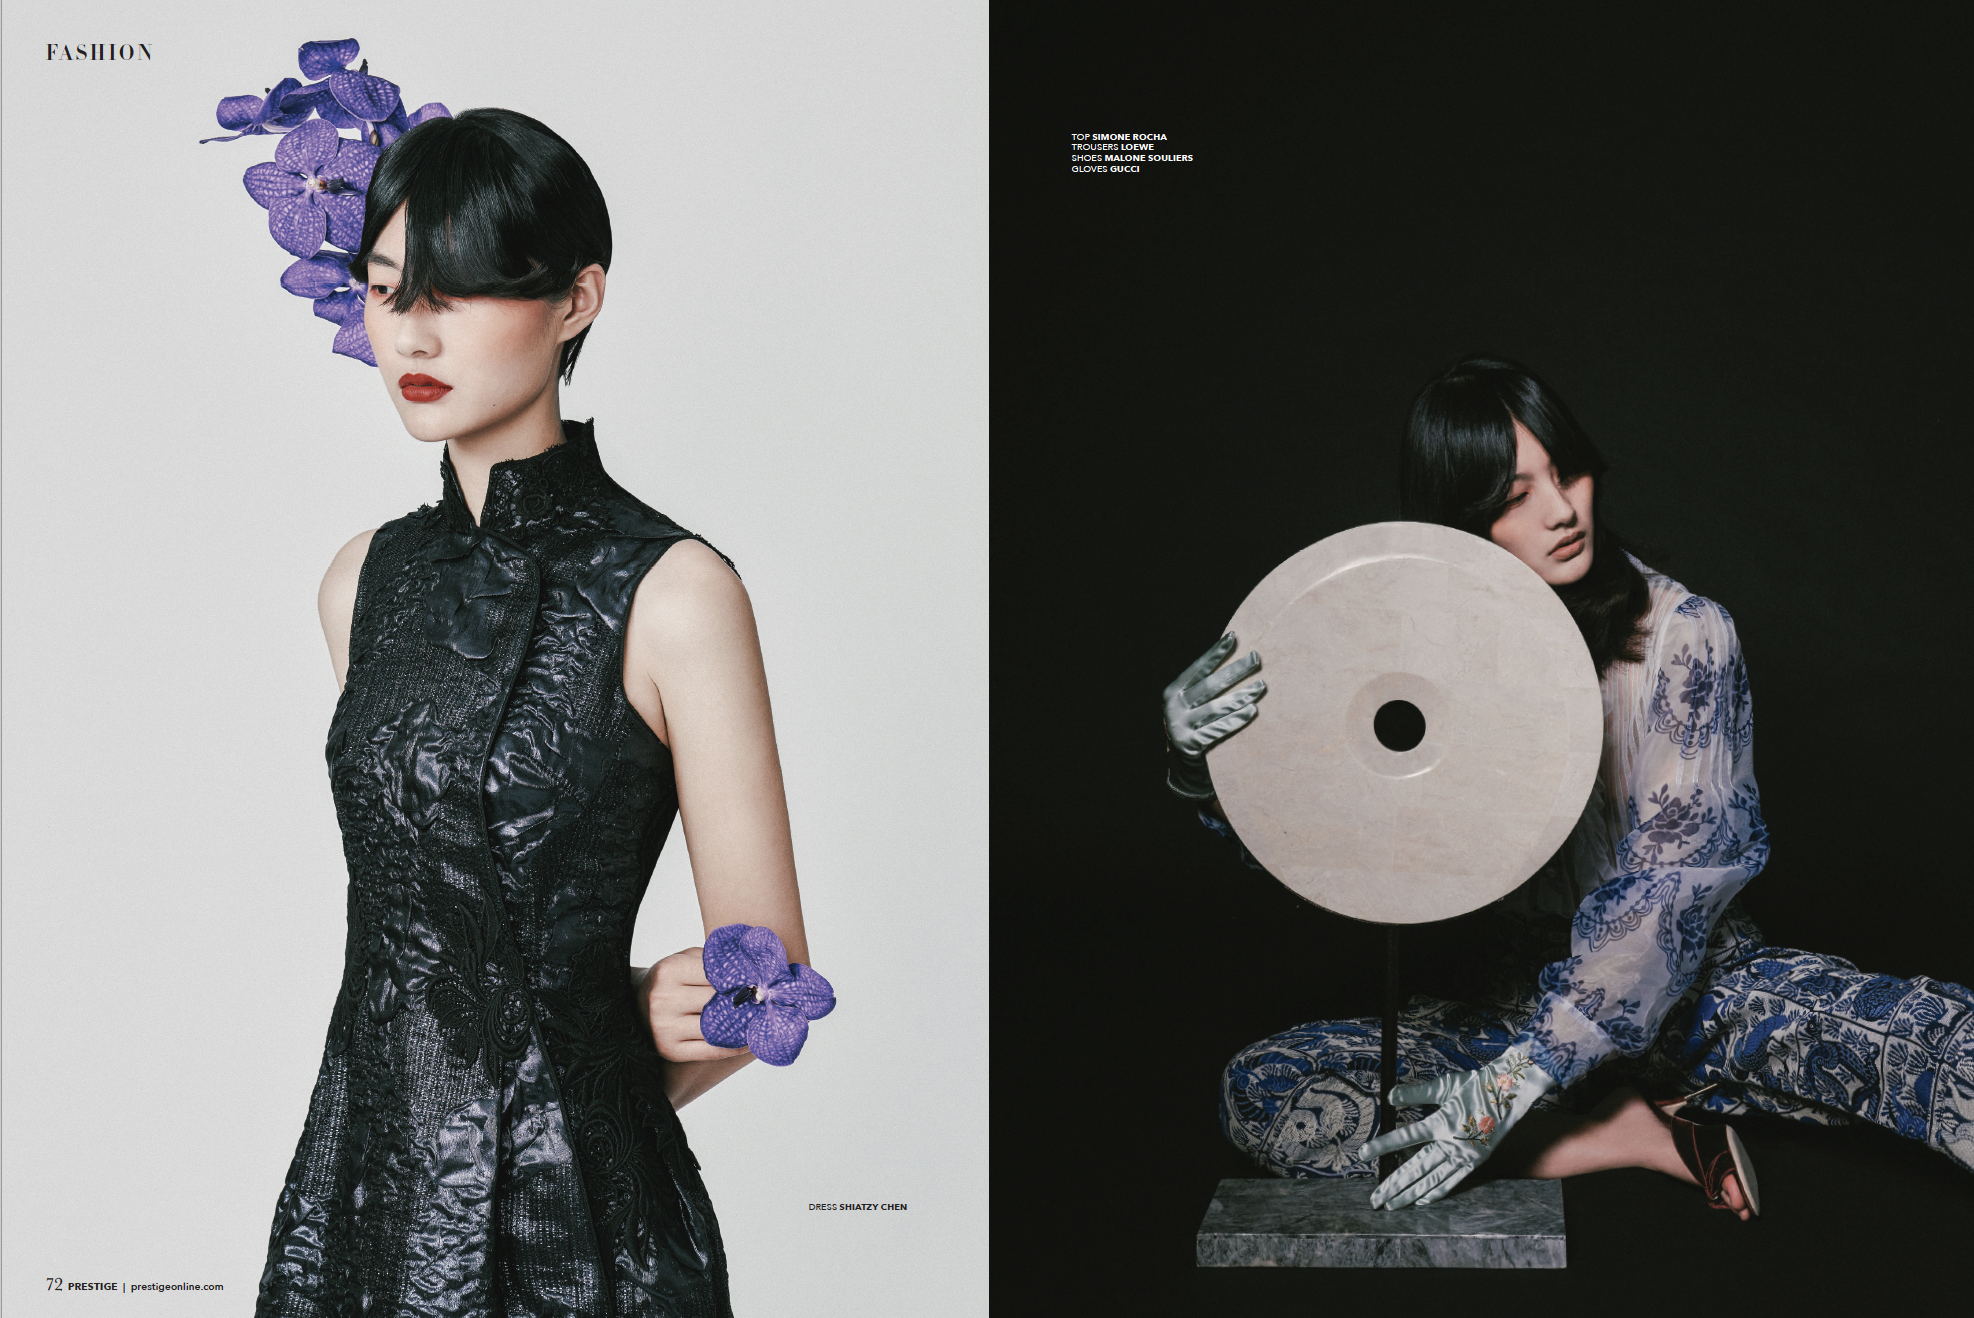 Chinese New Year Fashion Editorial Prestige Hong Kong Leung Mo January 2020 2.png